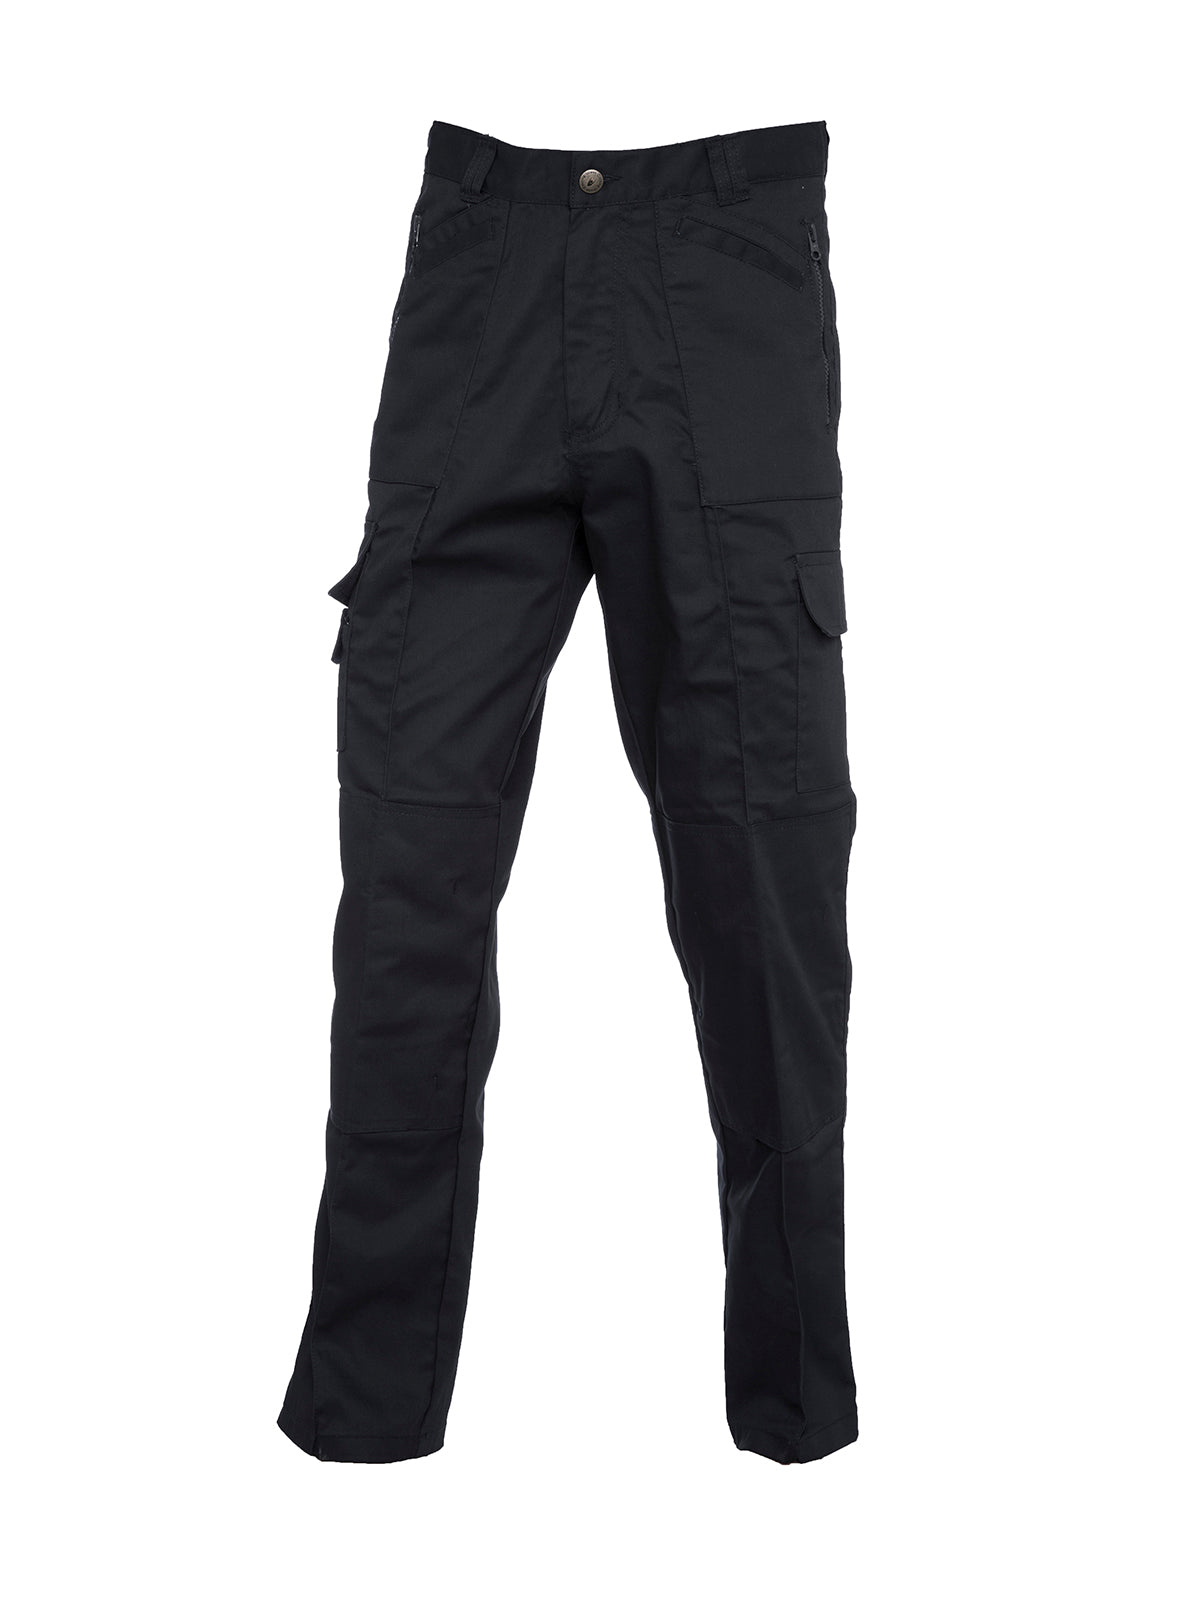 Uneek Action Trouser Long UC903L - Black